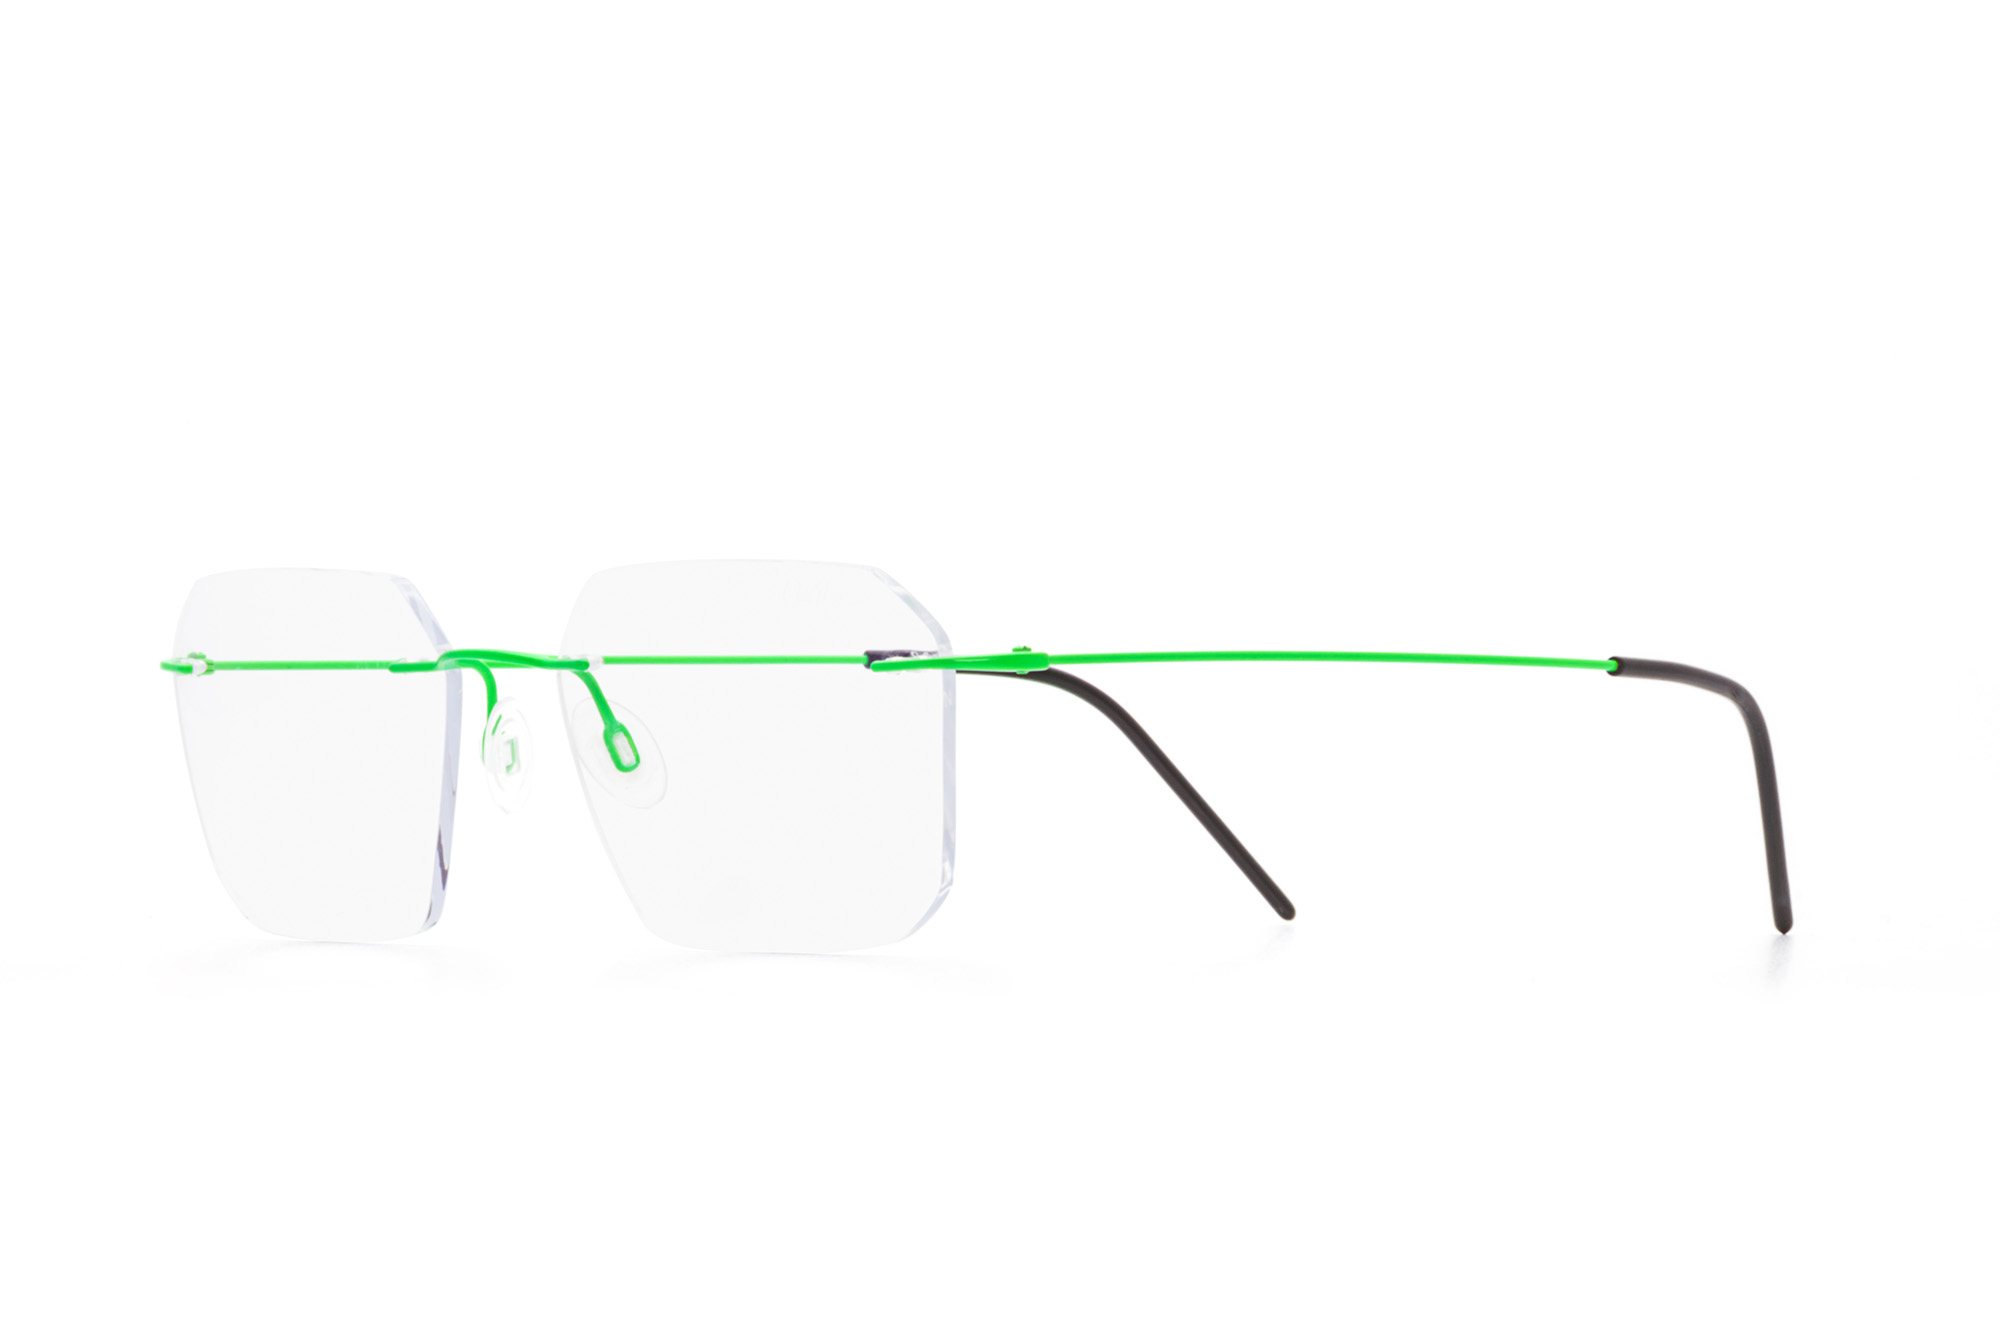 Kullanıma hazır optik tarzda işlenmiş camları ve optik uyumlu çerçevesiyle Oxibis Zef ZP7C12 53 orta ekartman neon yeşil renkli altıgen ve dikdörtgen model çerçevesiz unisex gözlüğü optisyen veya gözlükçülerin sunacağı numarasız veya numaralı cam özelleştirmeleriyle size en yakın gözlükçüden satın alabilirsiniz.